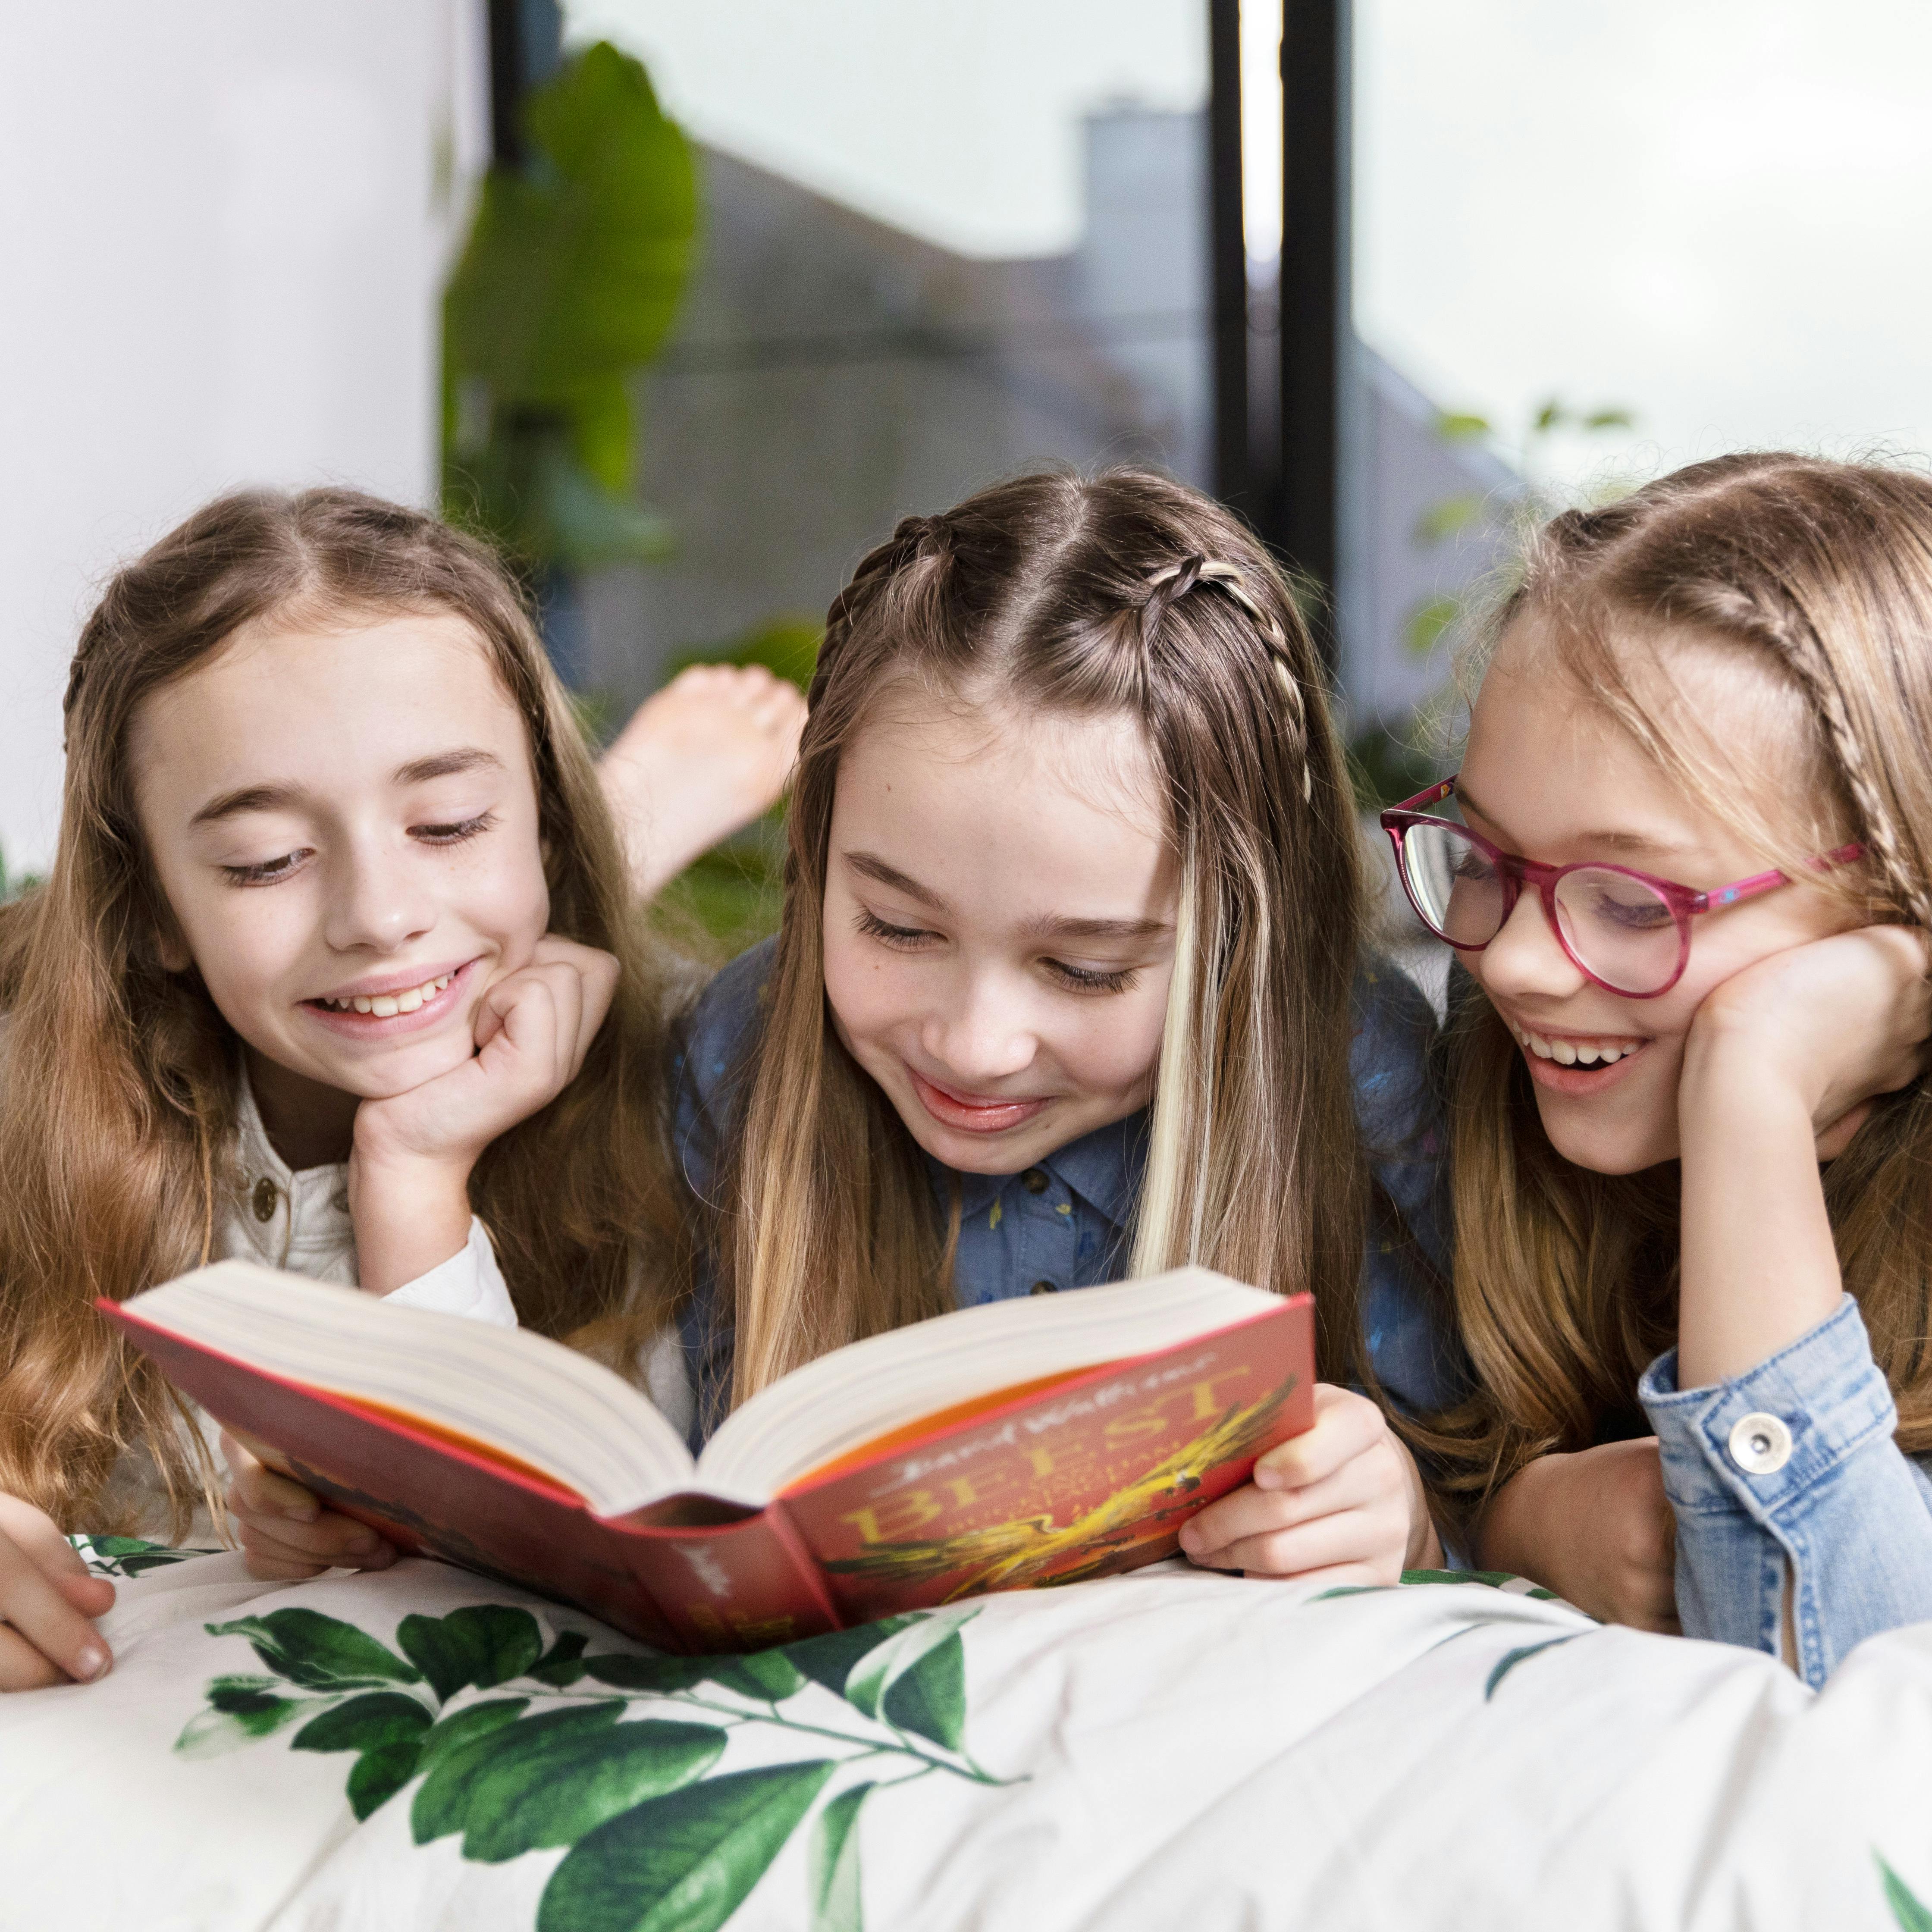 Drie meisjes lezen samen in een boek van David Walliams. 